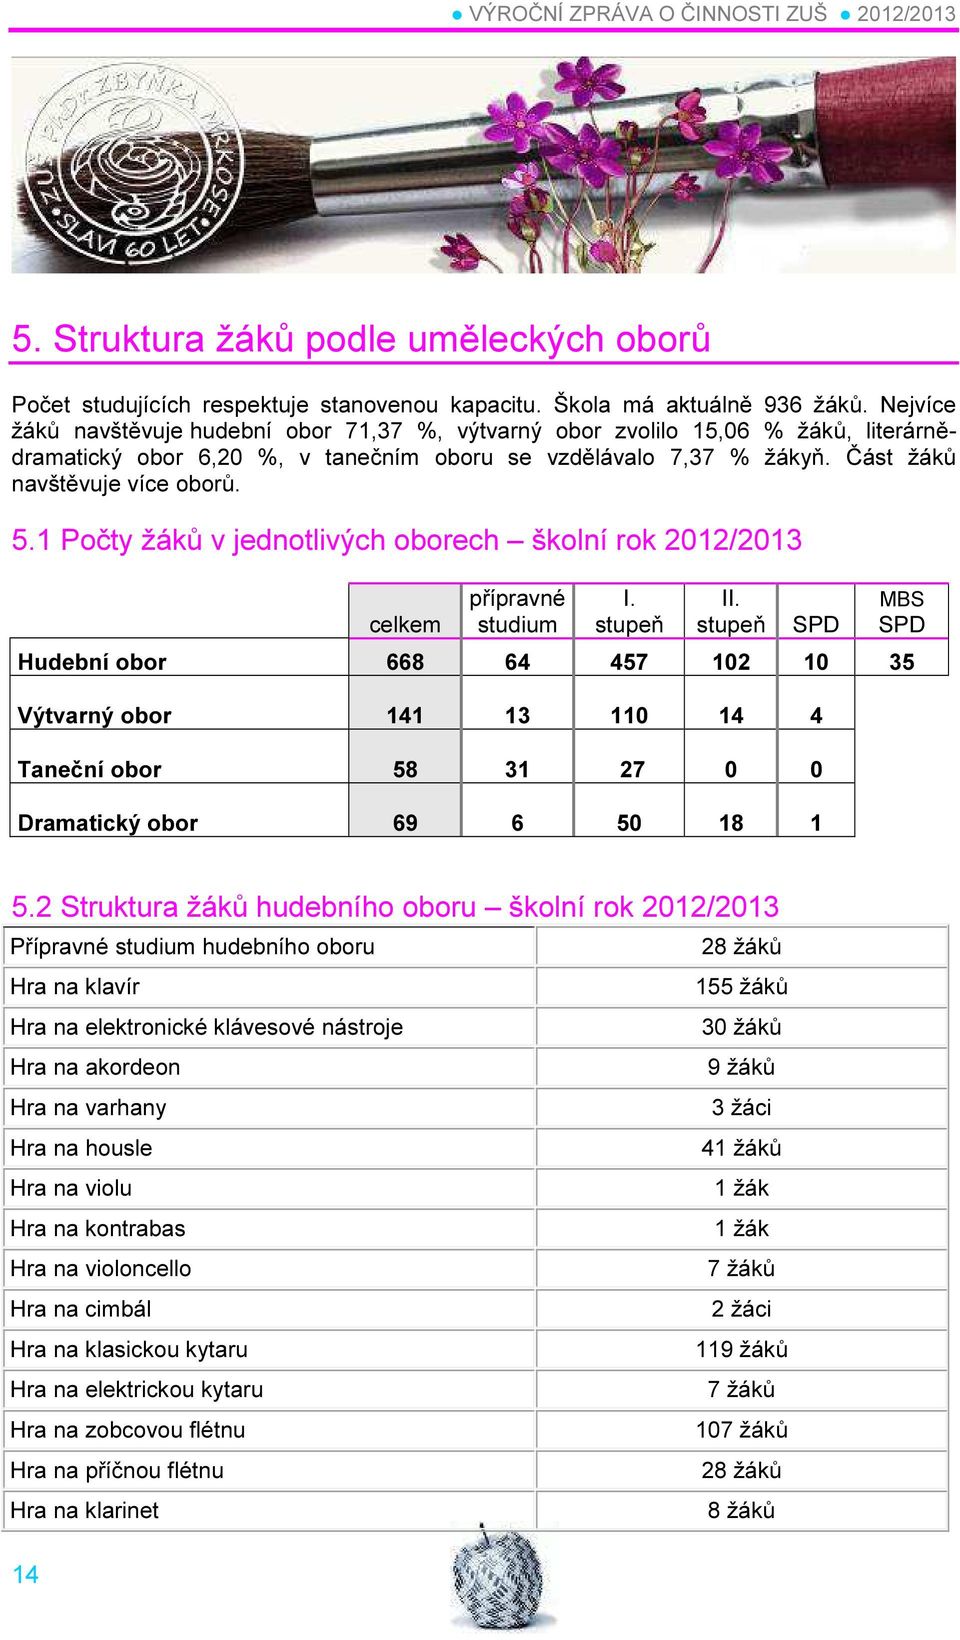 1 Počty žáků v jednotlivých oborech školní rok 2012/2013 celkem přípravné studium I. stupeň II.